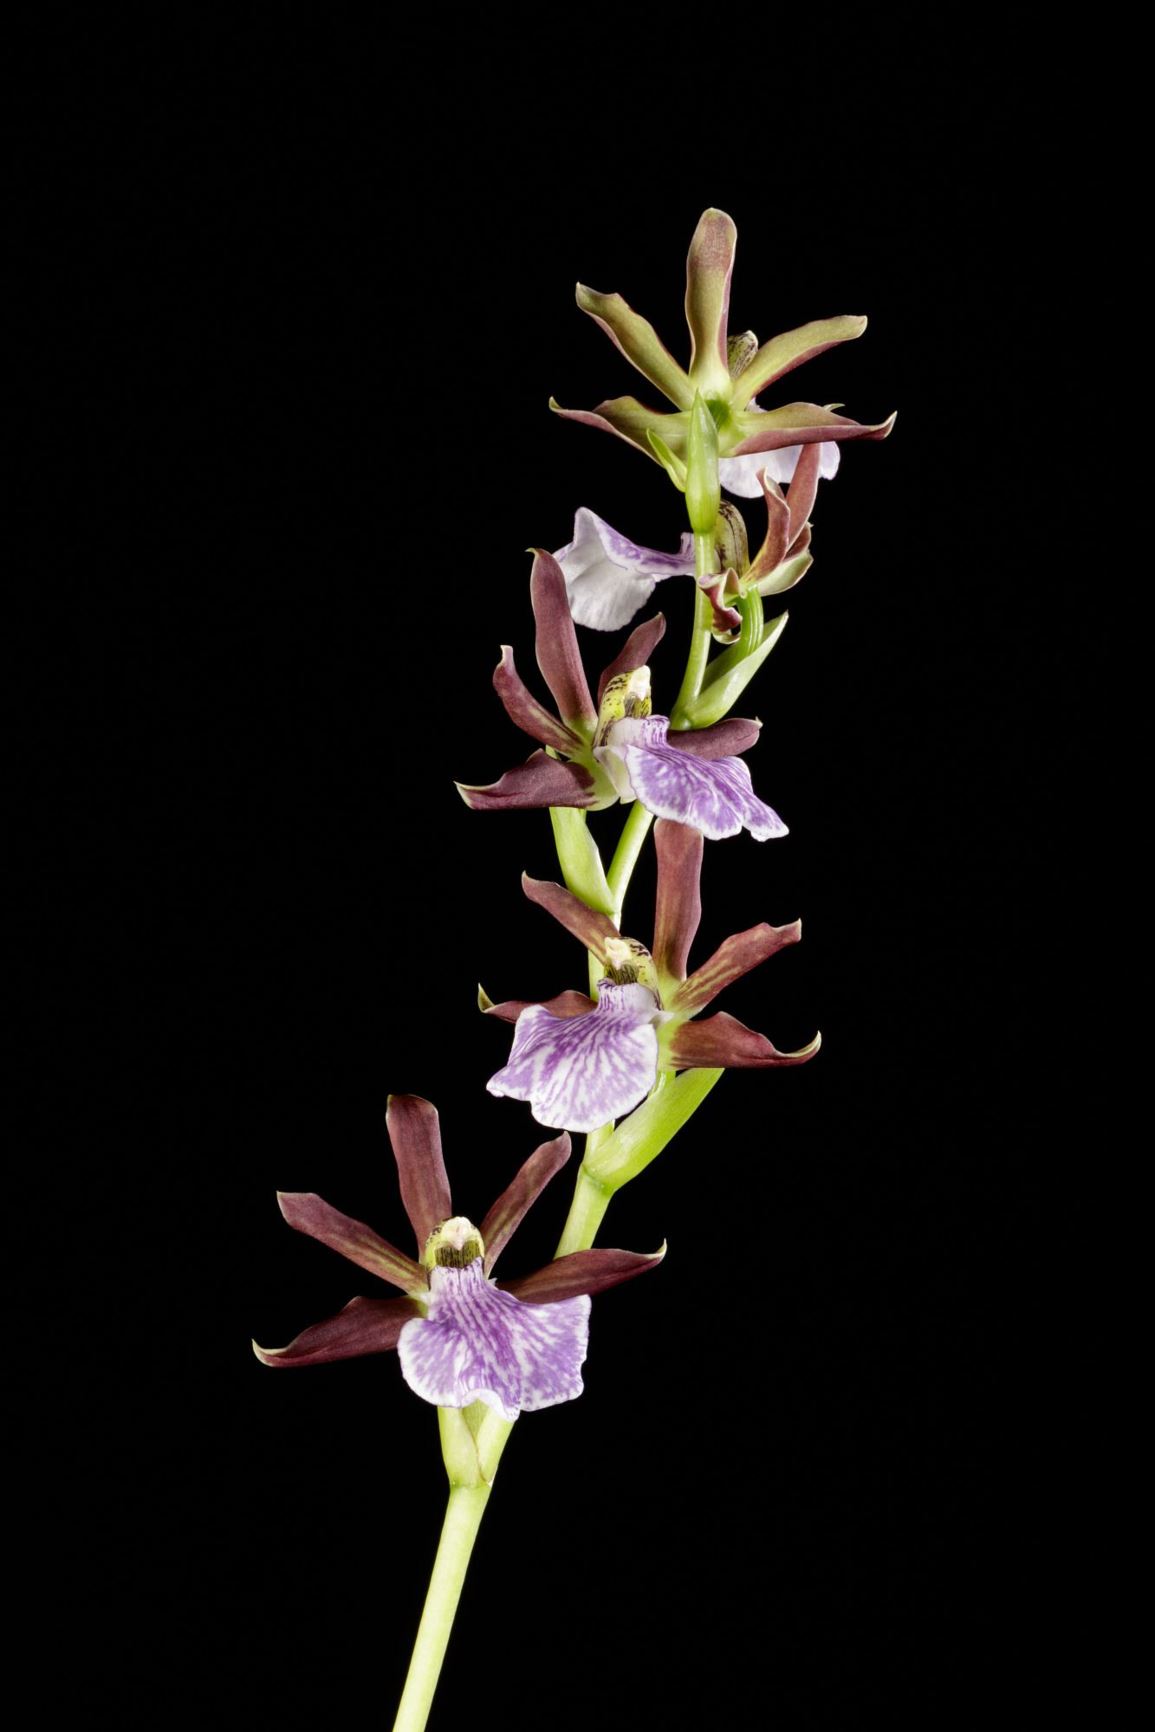 Zygopetalum maculatum subsp. triste - The Dark Purple Zygopetalum